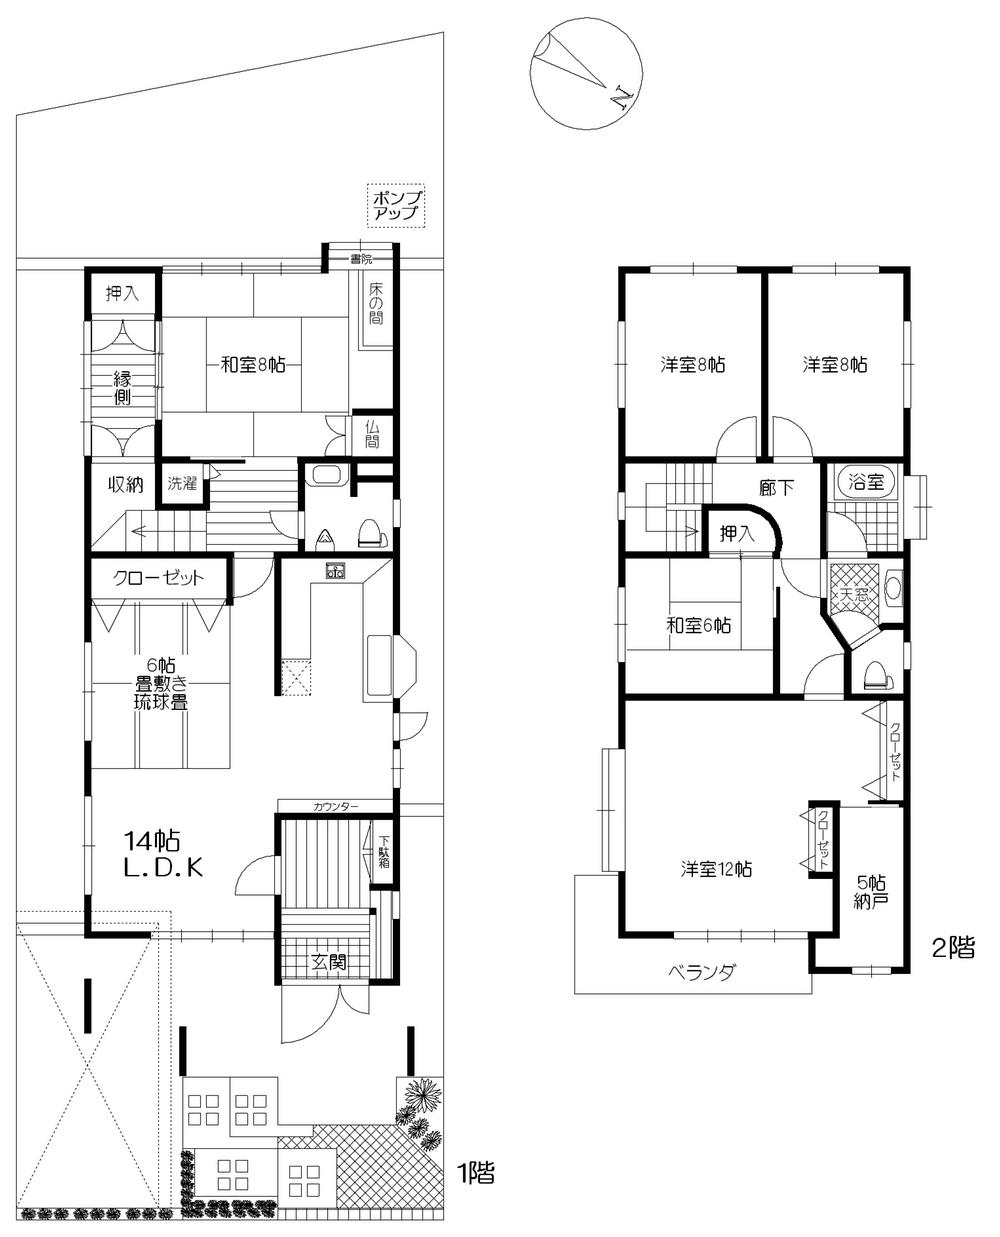 Floor plan. 24,800,000 yen, 5LDK + S (storeroom), Land area 231.43 sq m , Building area 182.72 sq m